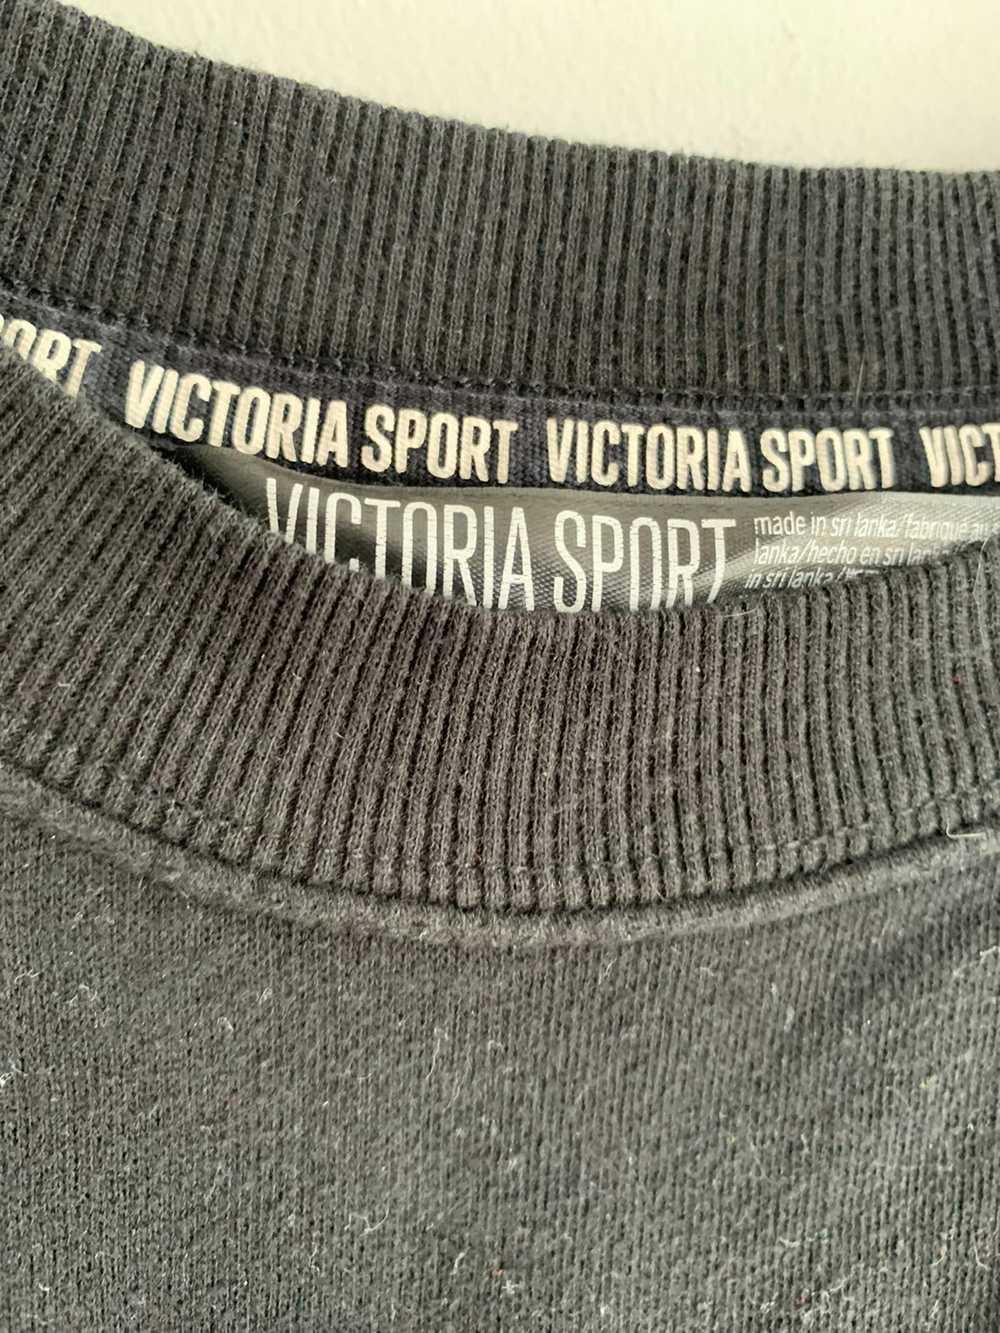 Victory Sportswear Victoria Sportswear Sweatshirt - image 3